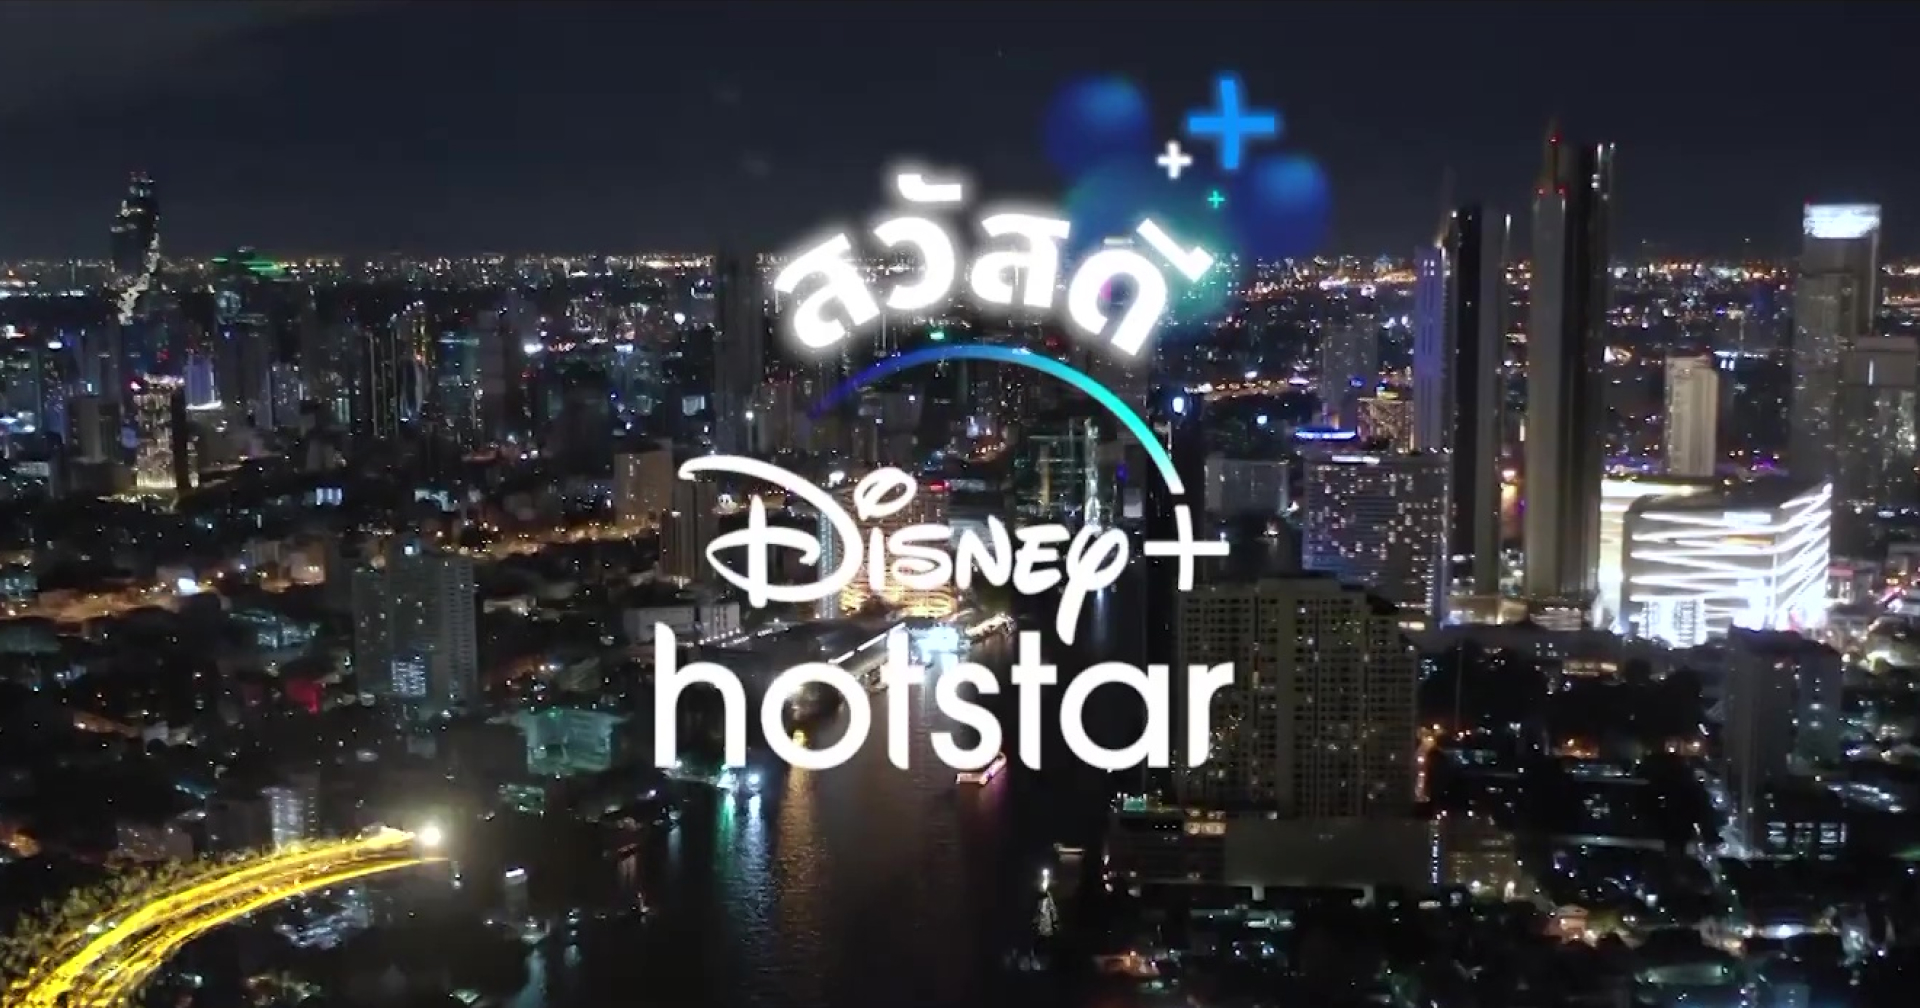 สวัสดี!! Disney+ Hotstar ขนทัพดาราดังทั่วไทยฉลองเปิดตัว 30 มิ.ย. นี้